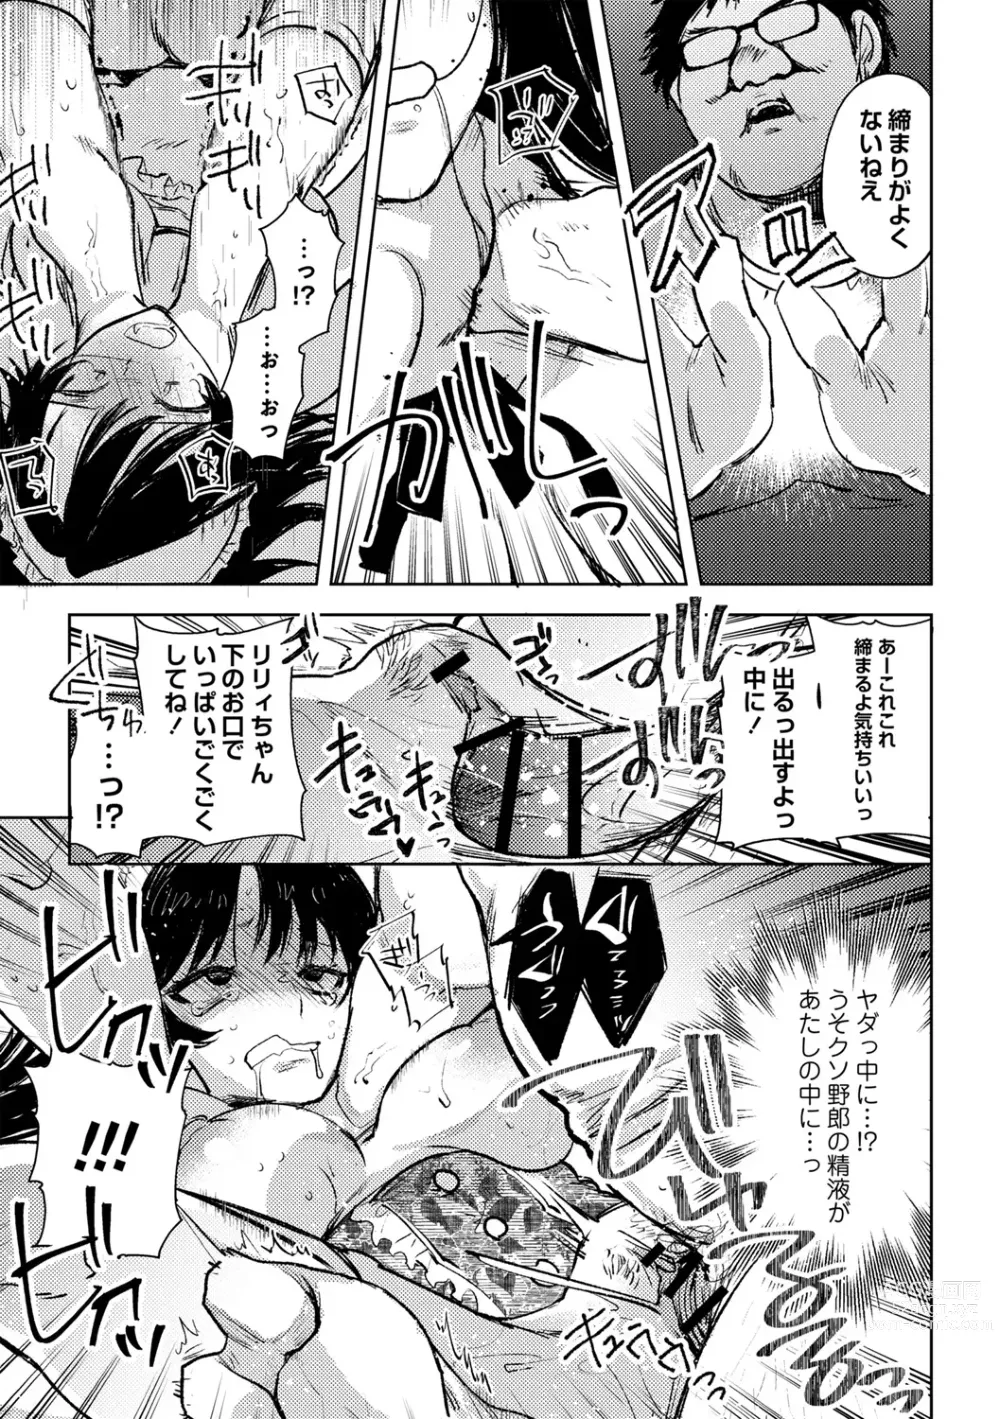 Page 5 of manga Yuuhei  KodoOji no Tou